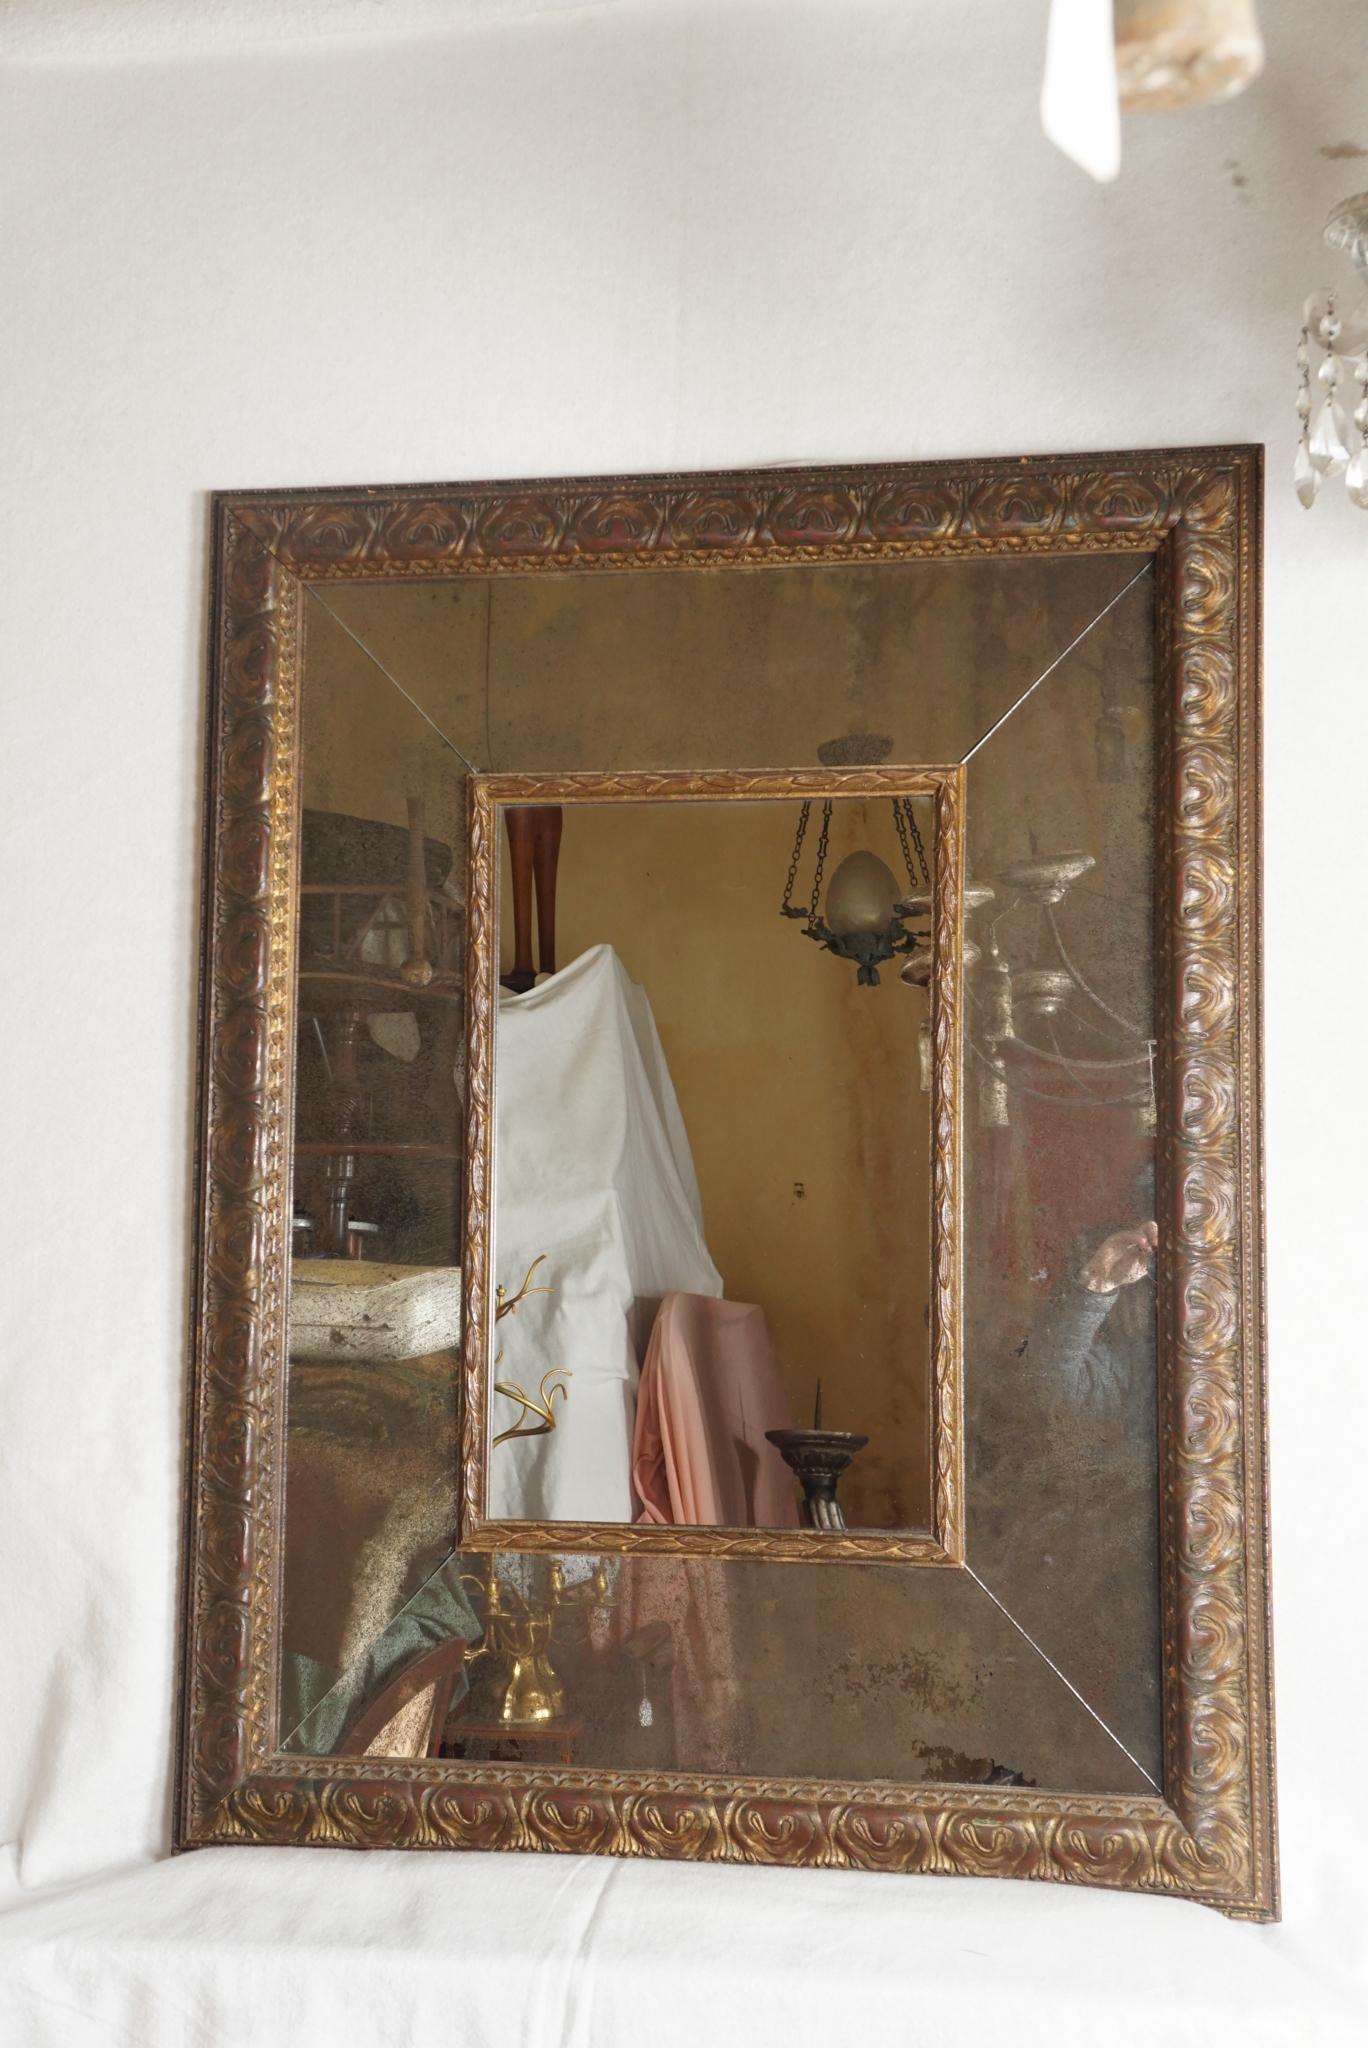 Fabriqué vers 1950, ce miroir vintage en bois sculpté présente une surface et un style anciens. La dorure Florentine est riche étant posée sur un fond rouge profond donnant ainsi au frottement vie et mouvement. Le cadre est constitué d'un large